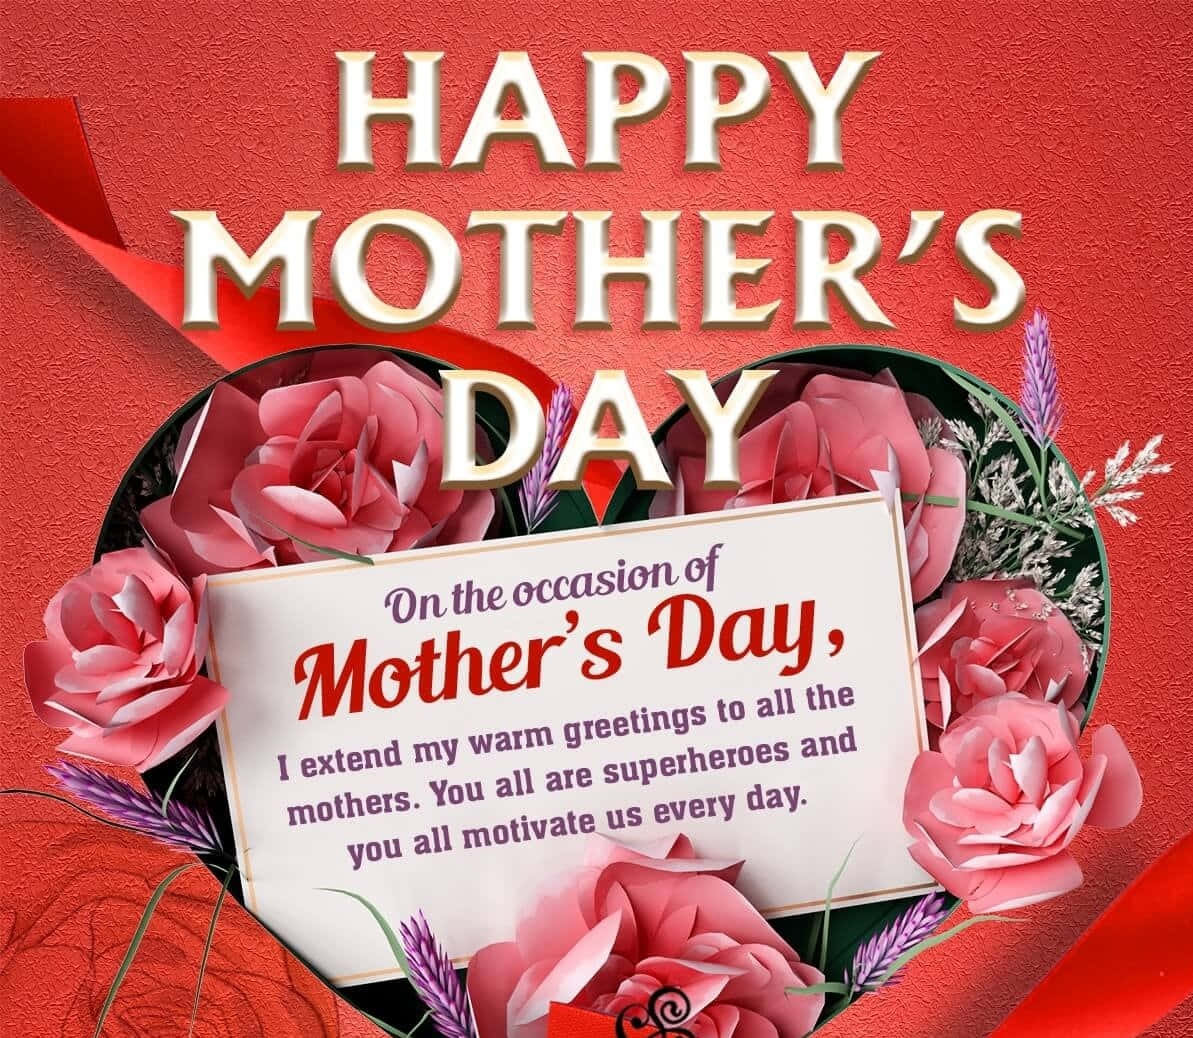 Feiernsie Die Bedingungslose Liebe Und Wertschätzung Ihrer Mutter An Diesem #muttertag!